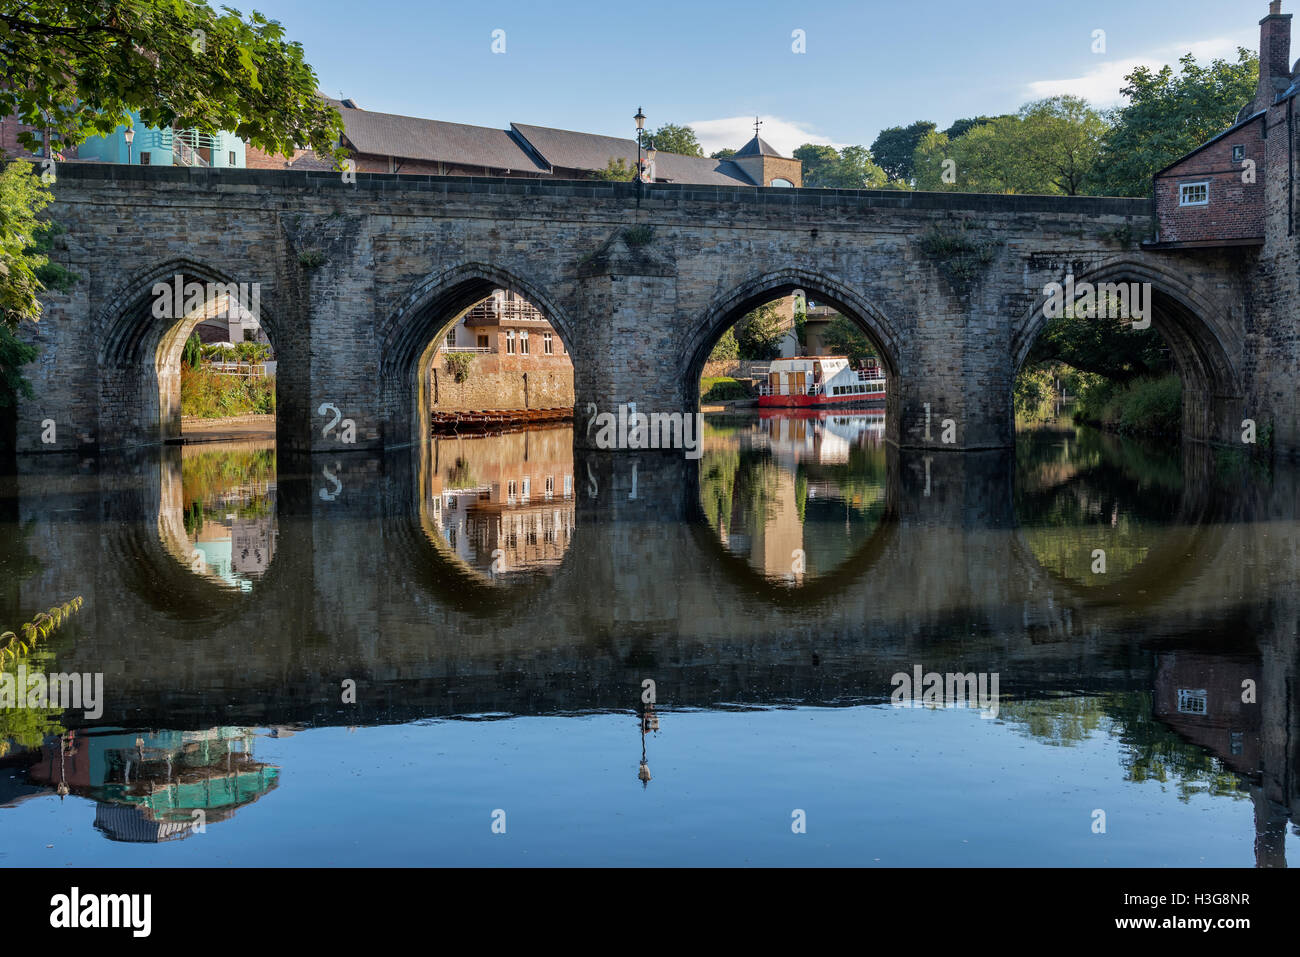 Antiguo puente de piedra cruzando el desgaste del río que atraviesa el centro de la ciudad de Durham, Inglaterra. Foto de stock